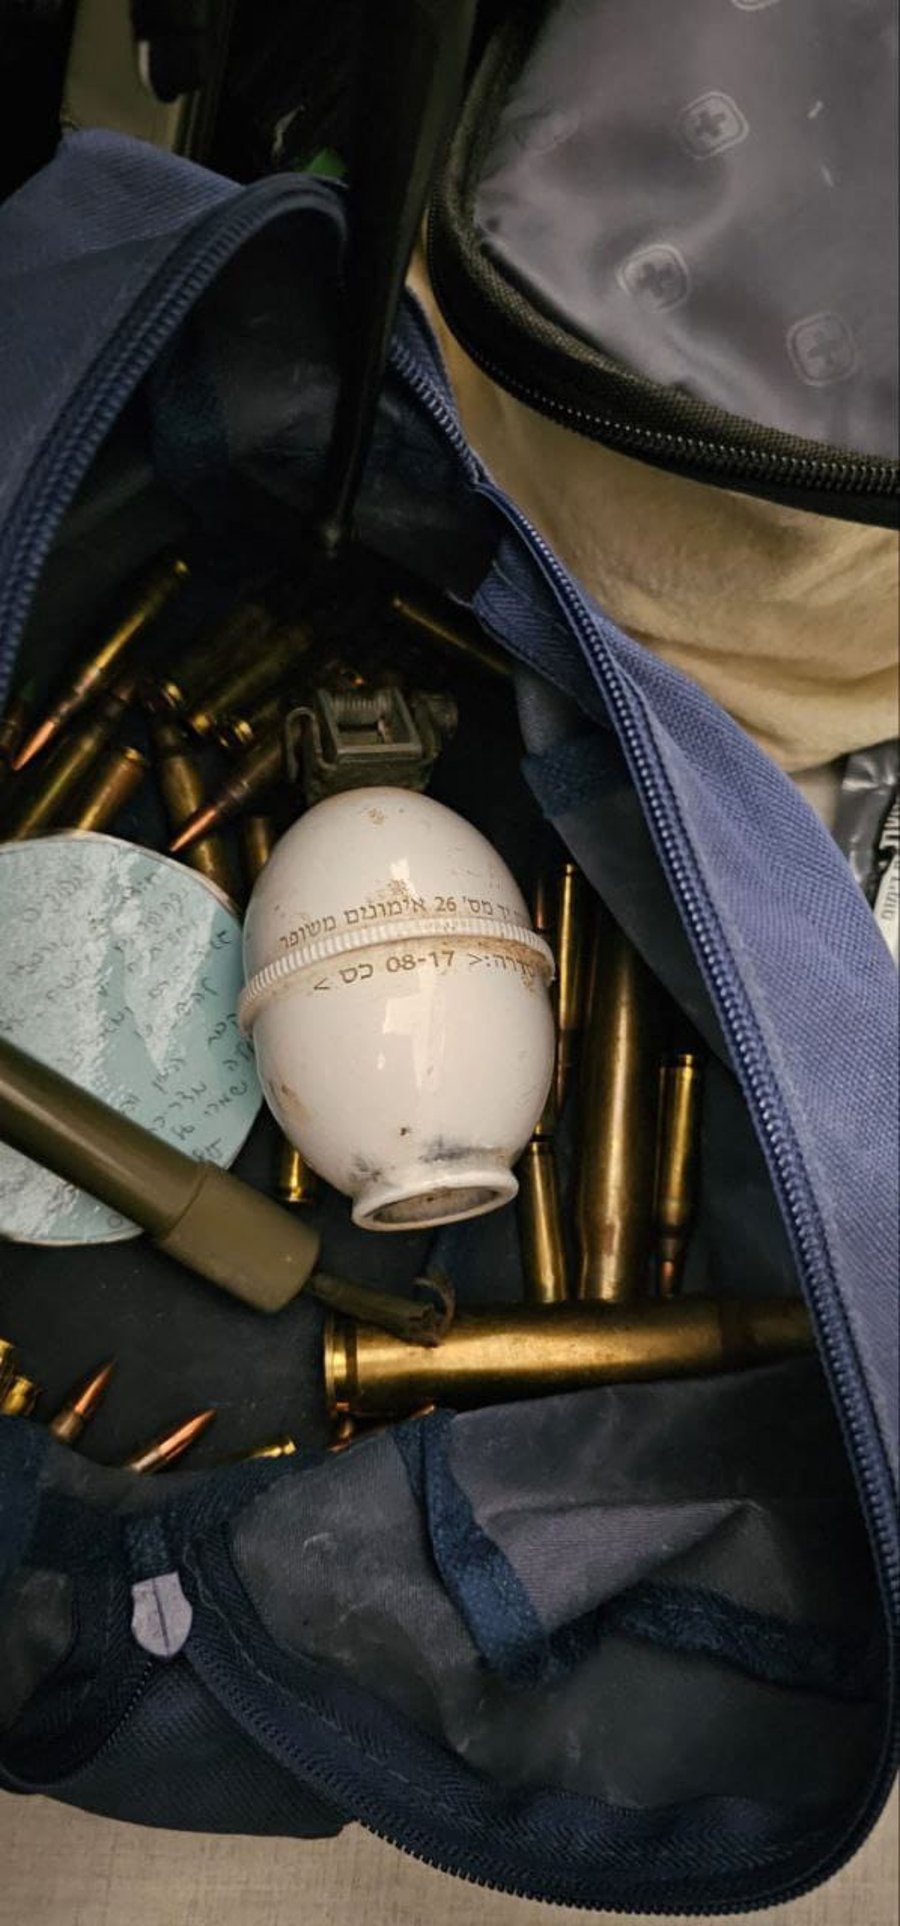 חייל משירות סדיר נתפס עם אמצעי לחימה, שכולל מאות כדורי תחמושת, רימון אימונים ומחסניות